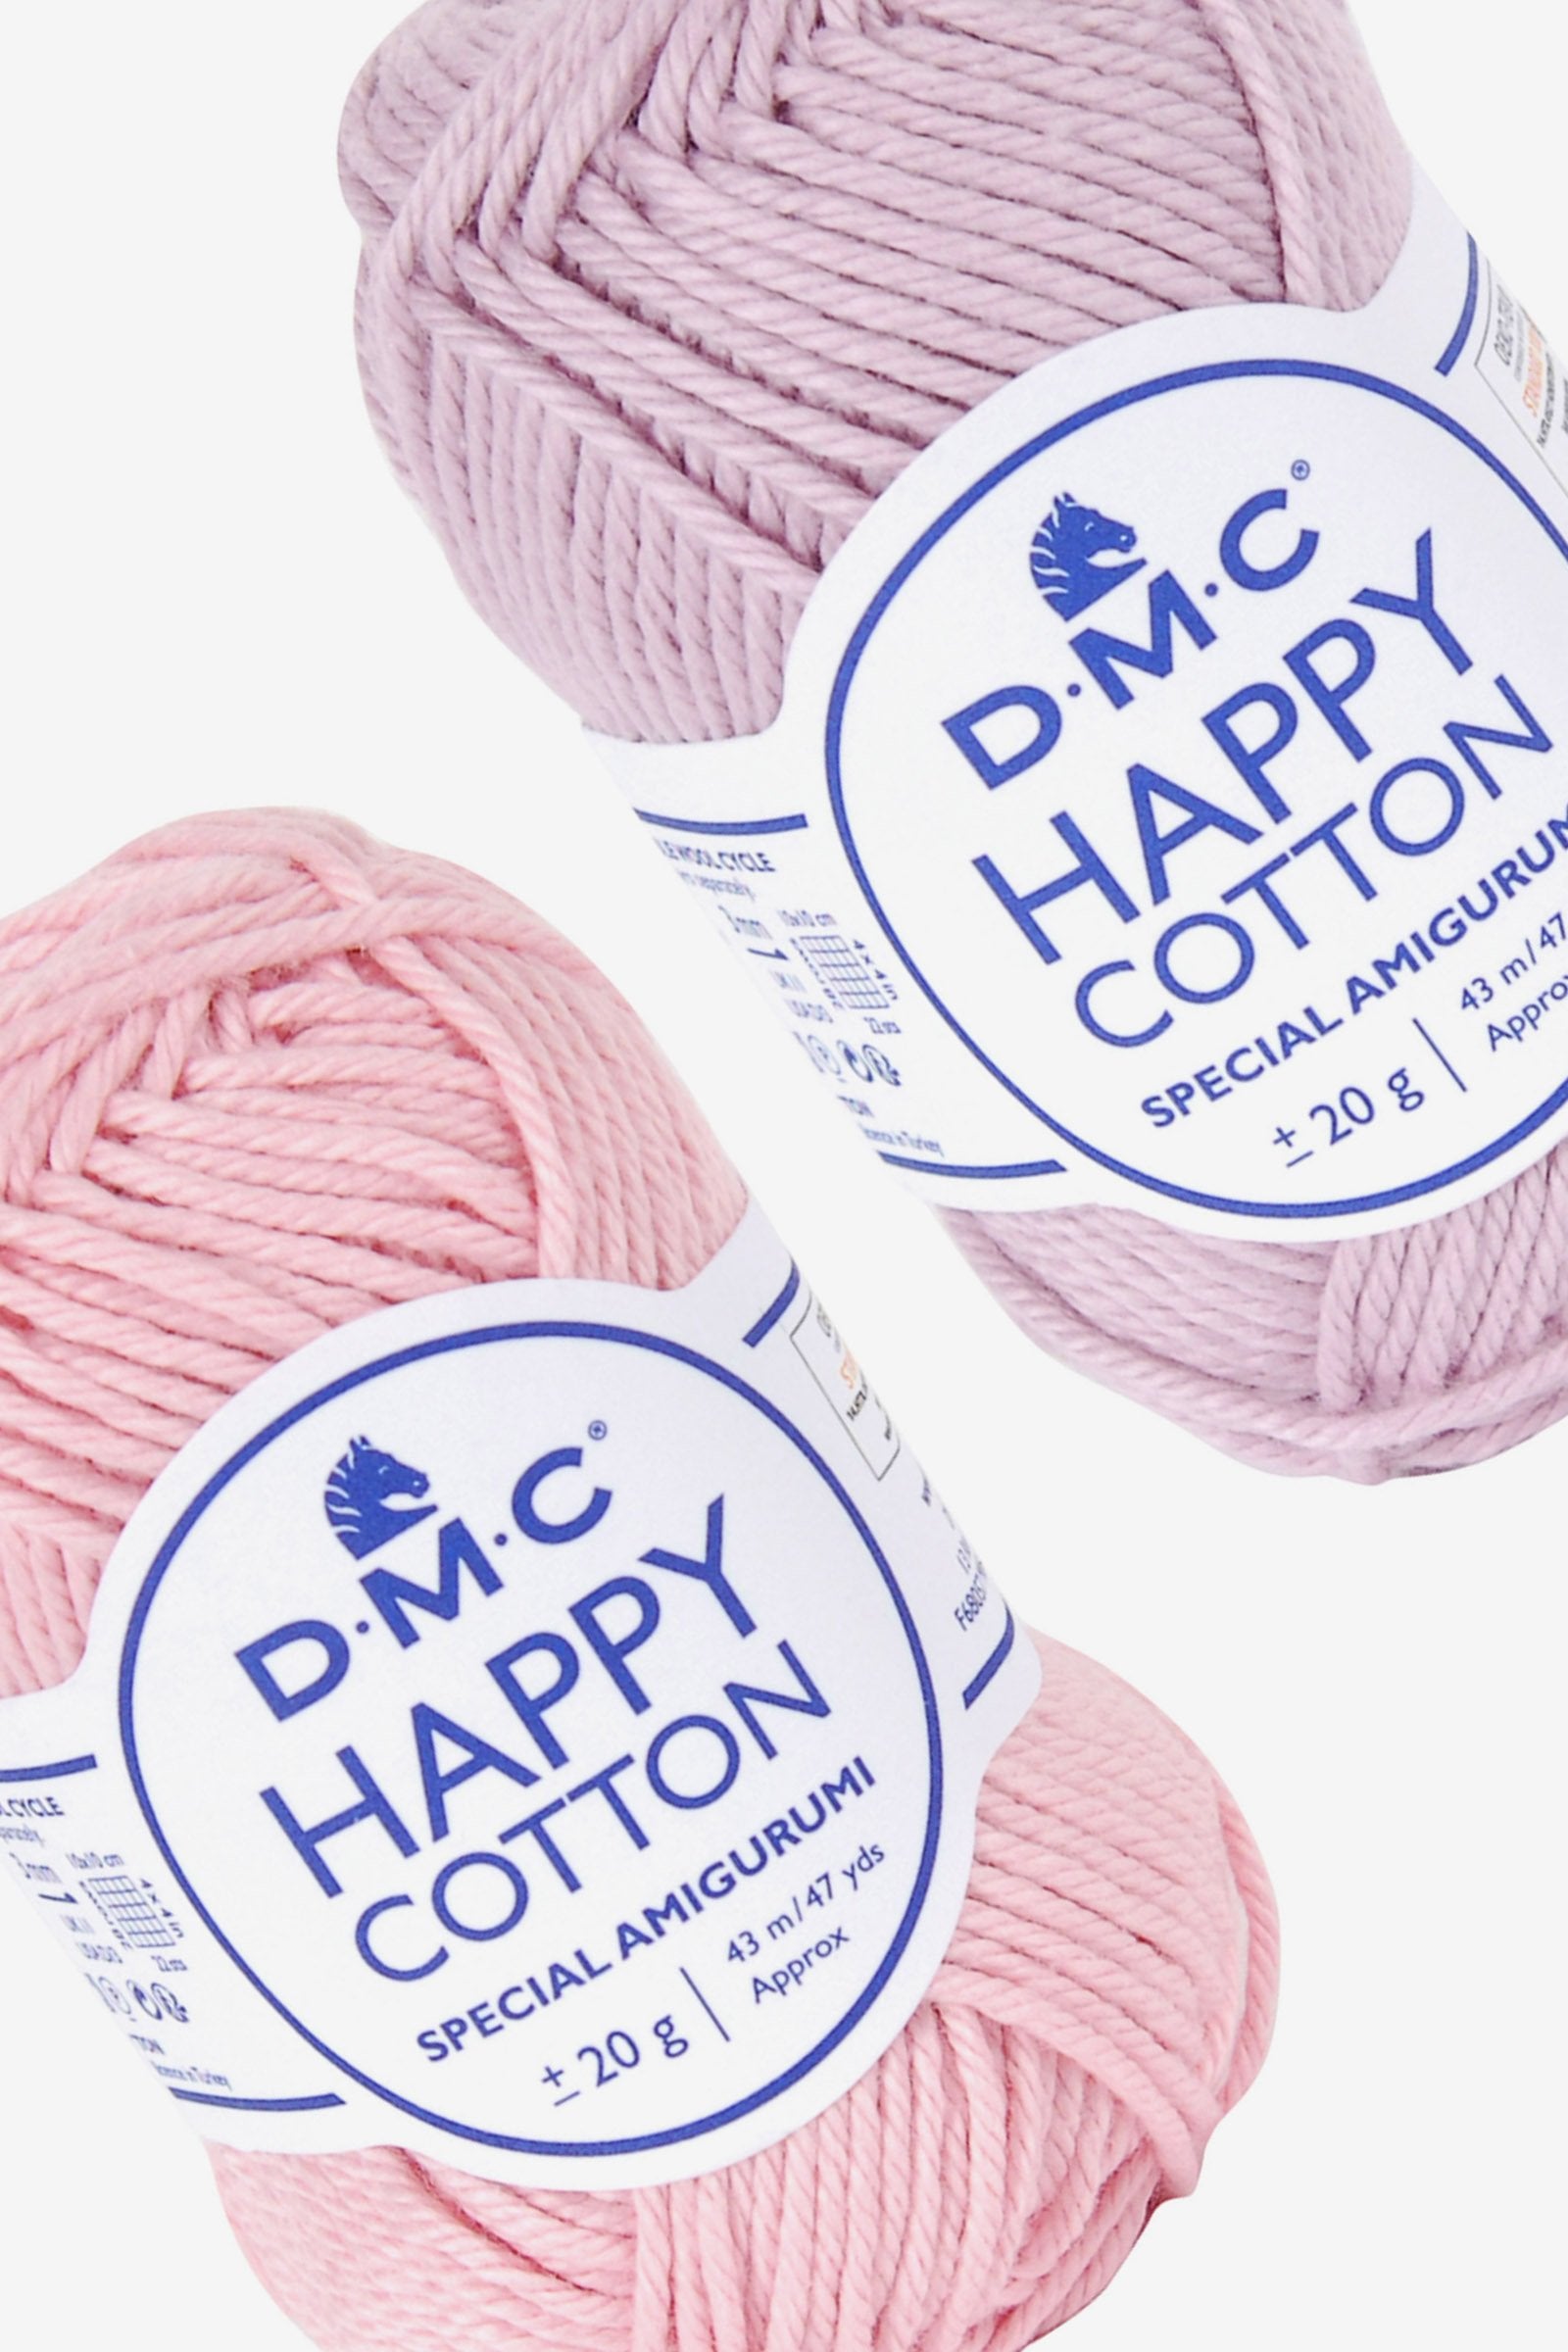 Hilo Algodón DMC Happy Cotton - Sin Enredos